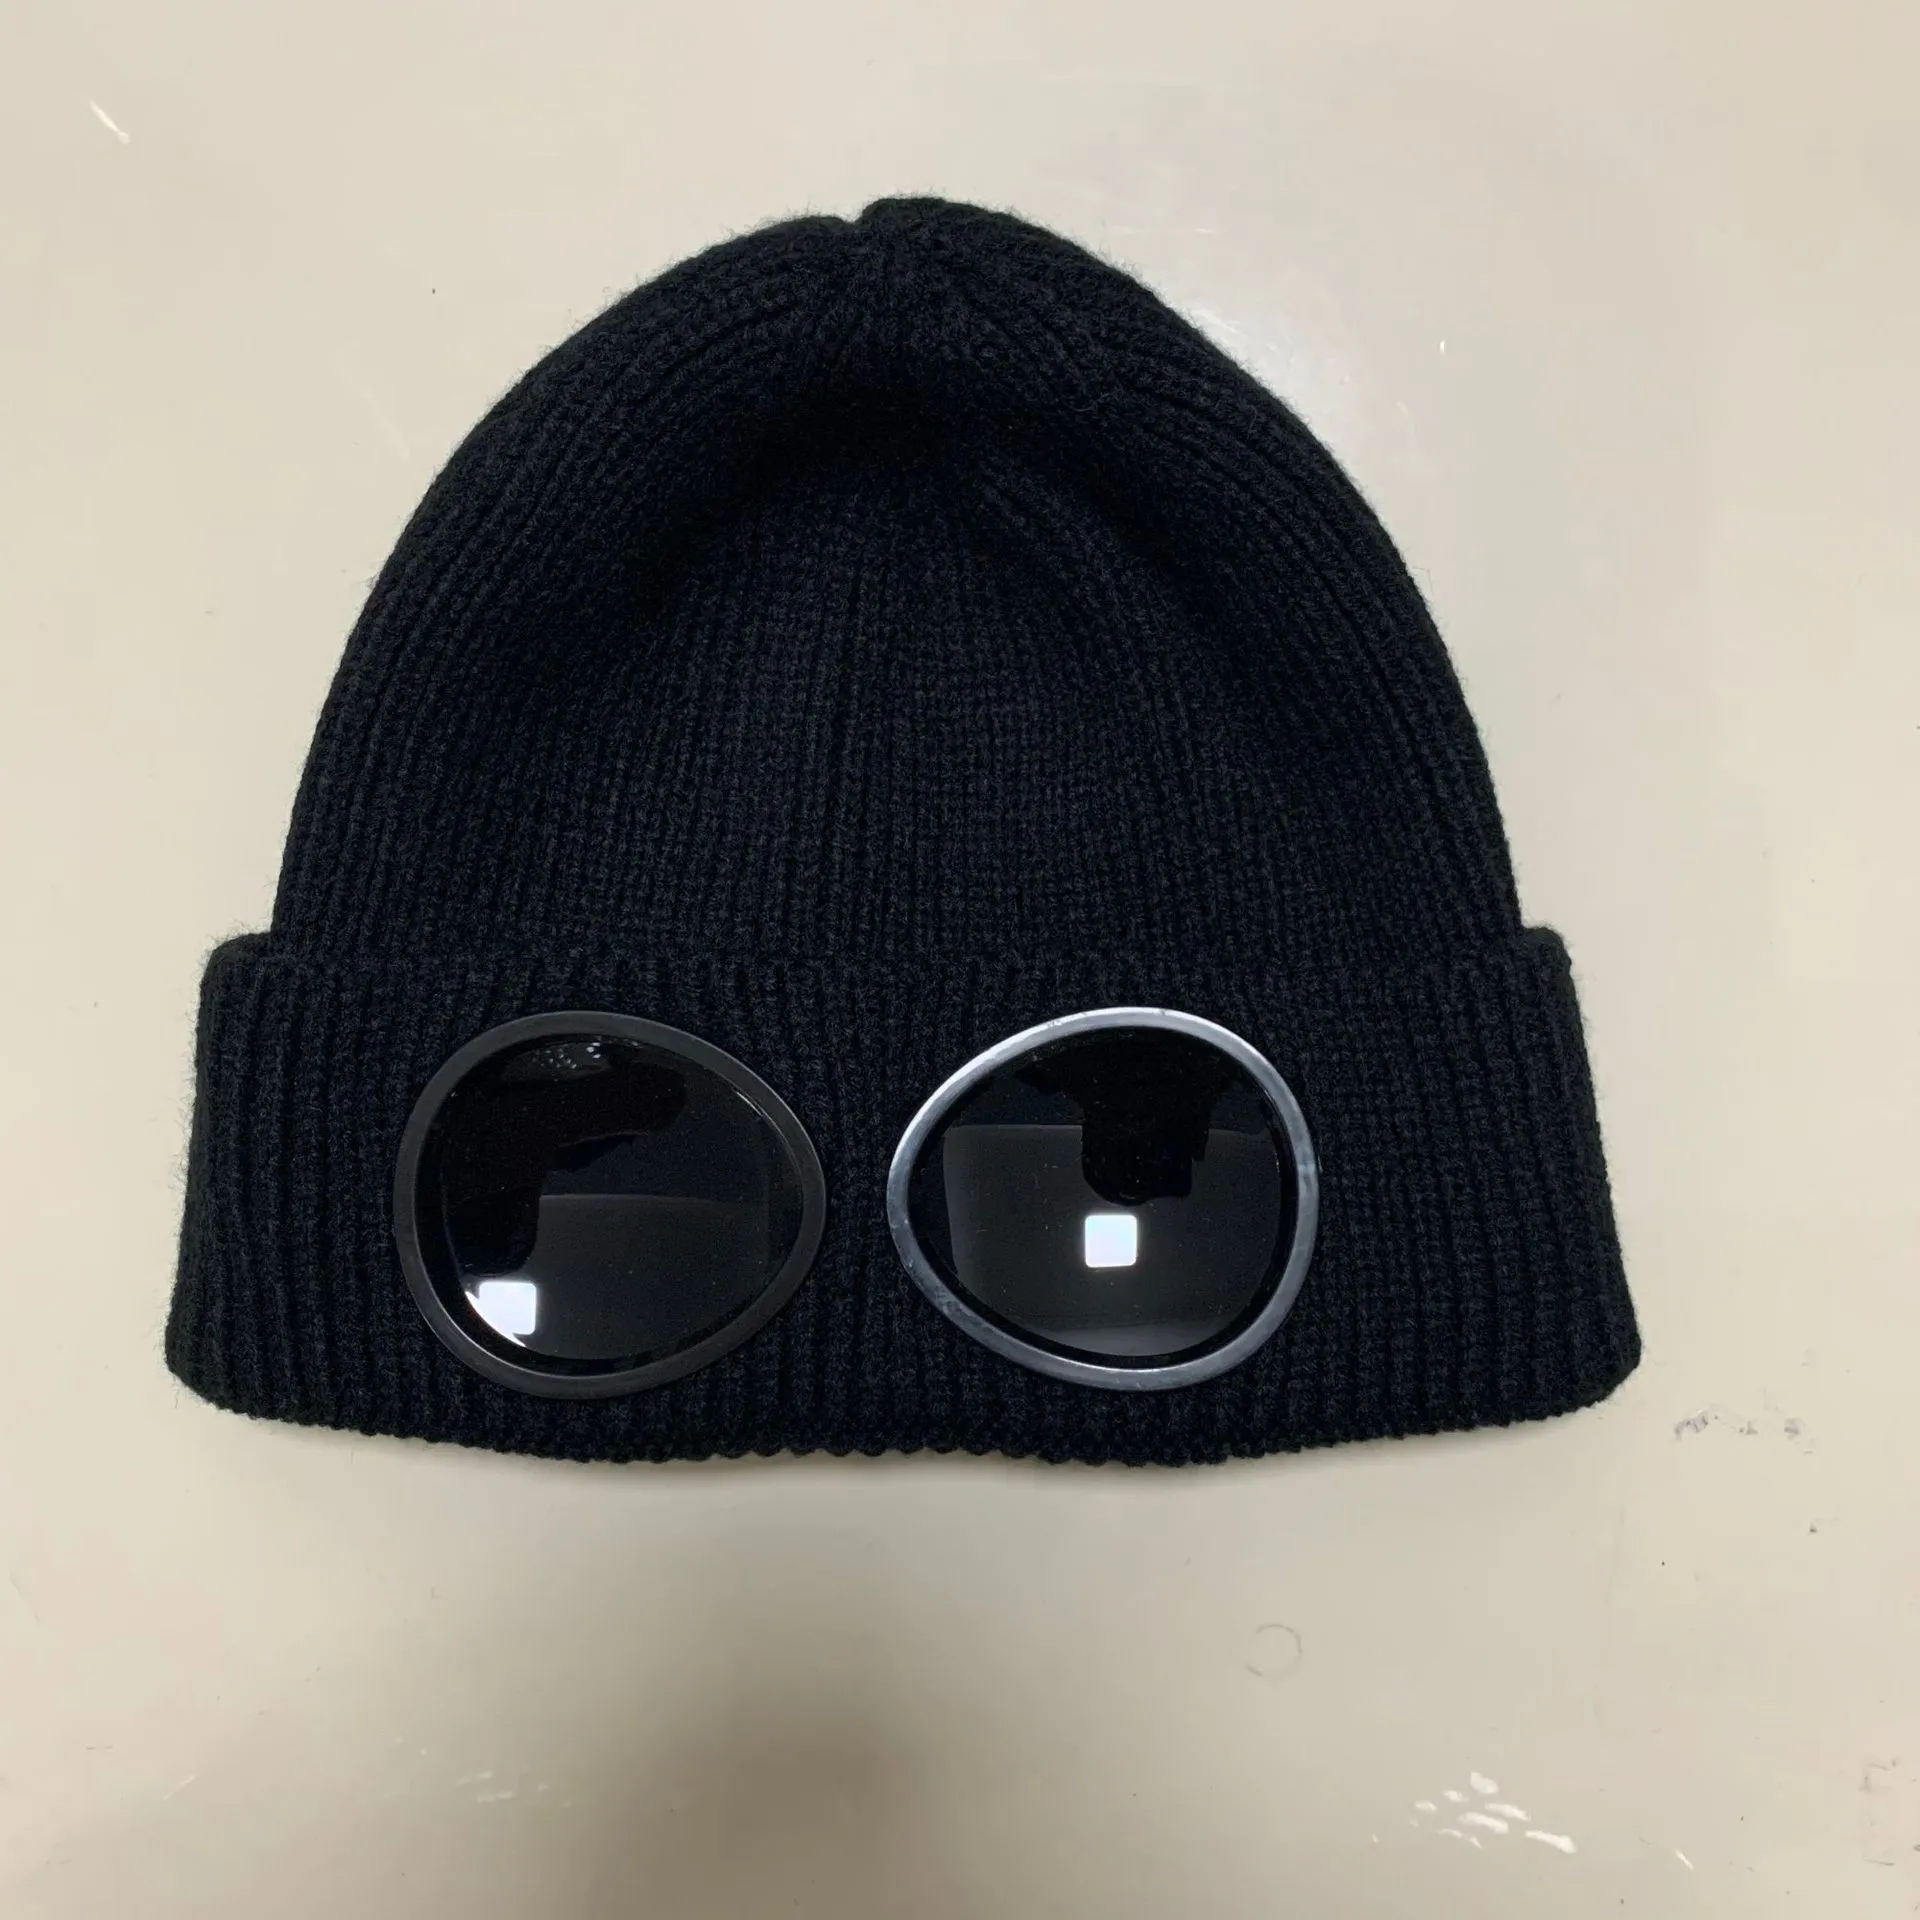 Beanie designer beanie chapéu gorros de luxo homens chapéu de malha duas lentes óculos crânio tampas ao ar livre mulheres uniesex inverno beanie preto cinza bonnet design